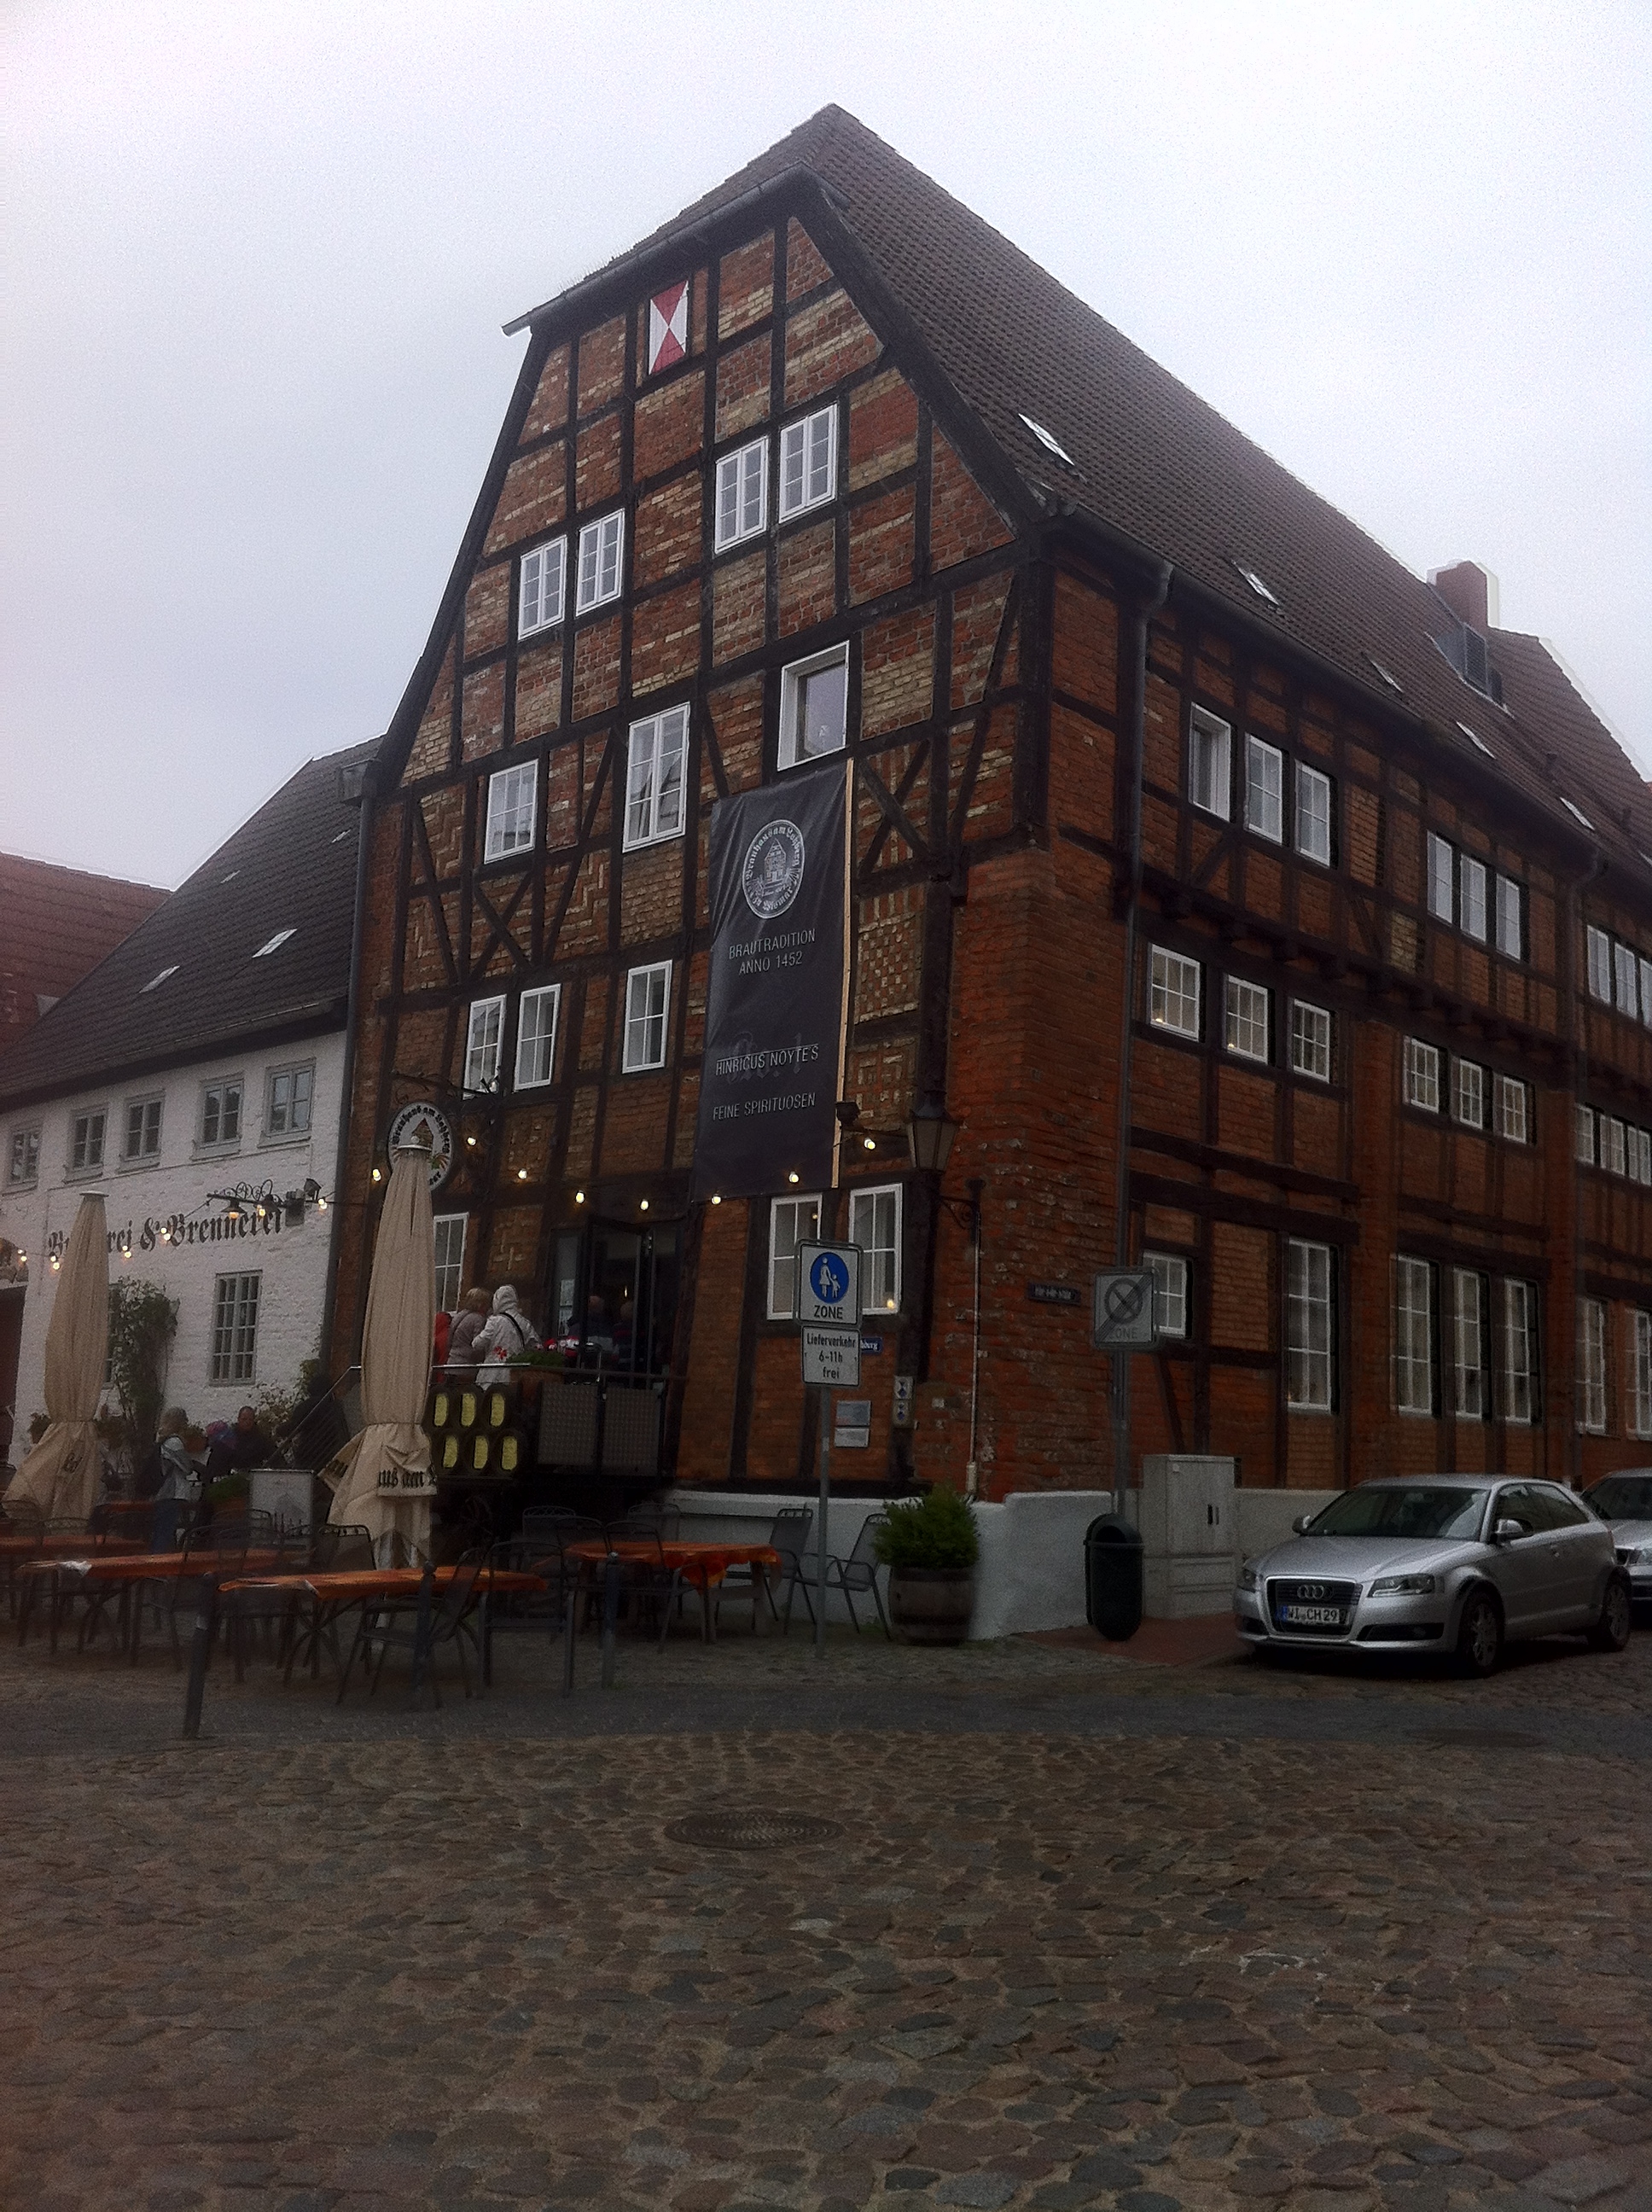 Brauhaus am Lohberg in Wismar